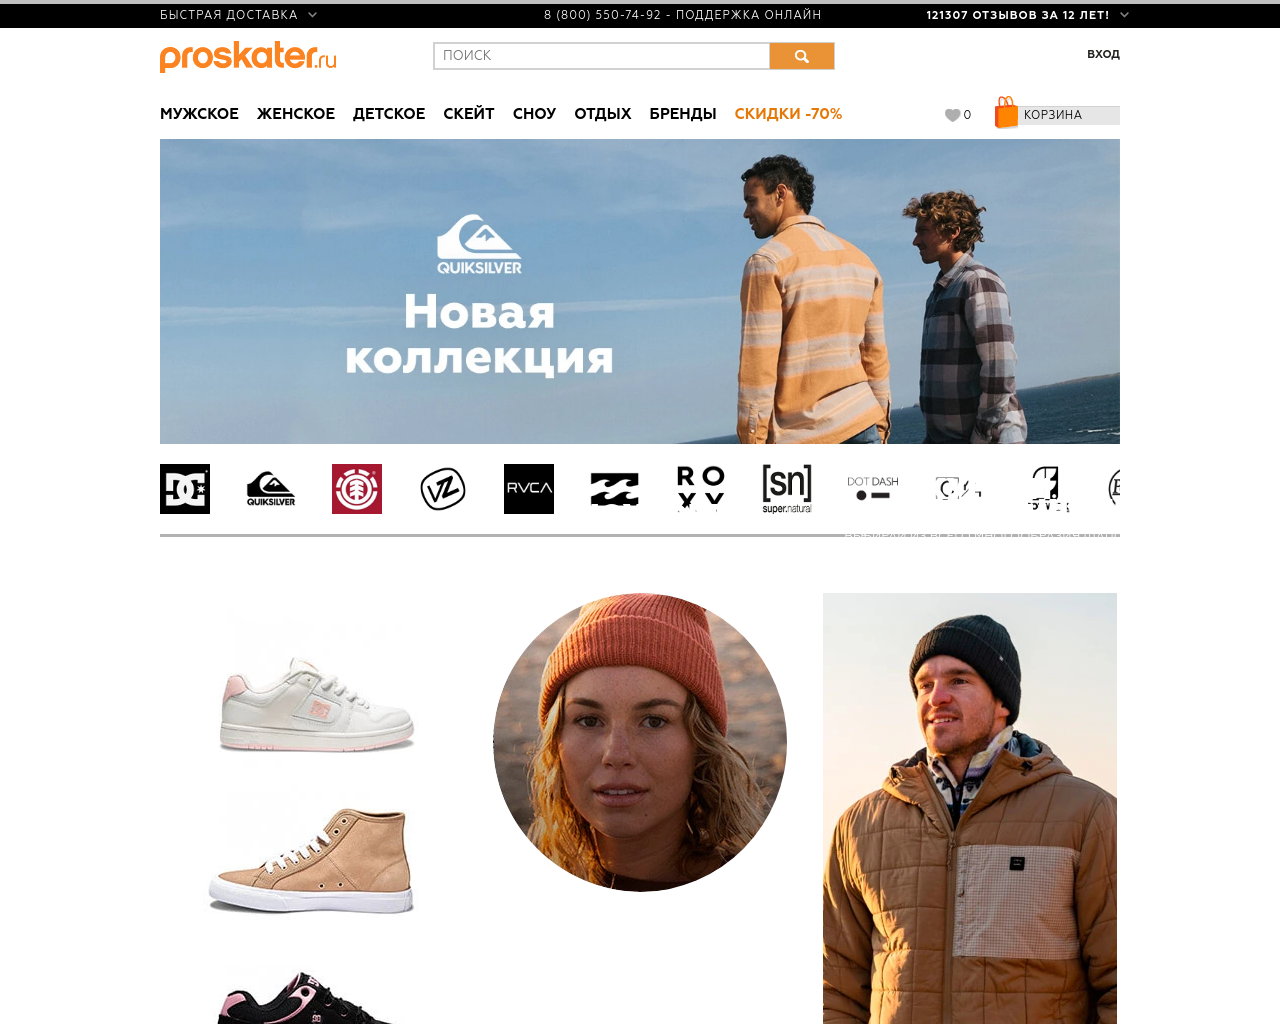 proskater.ru